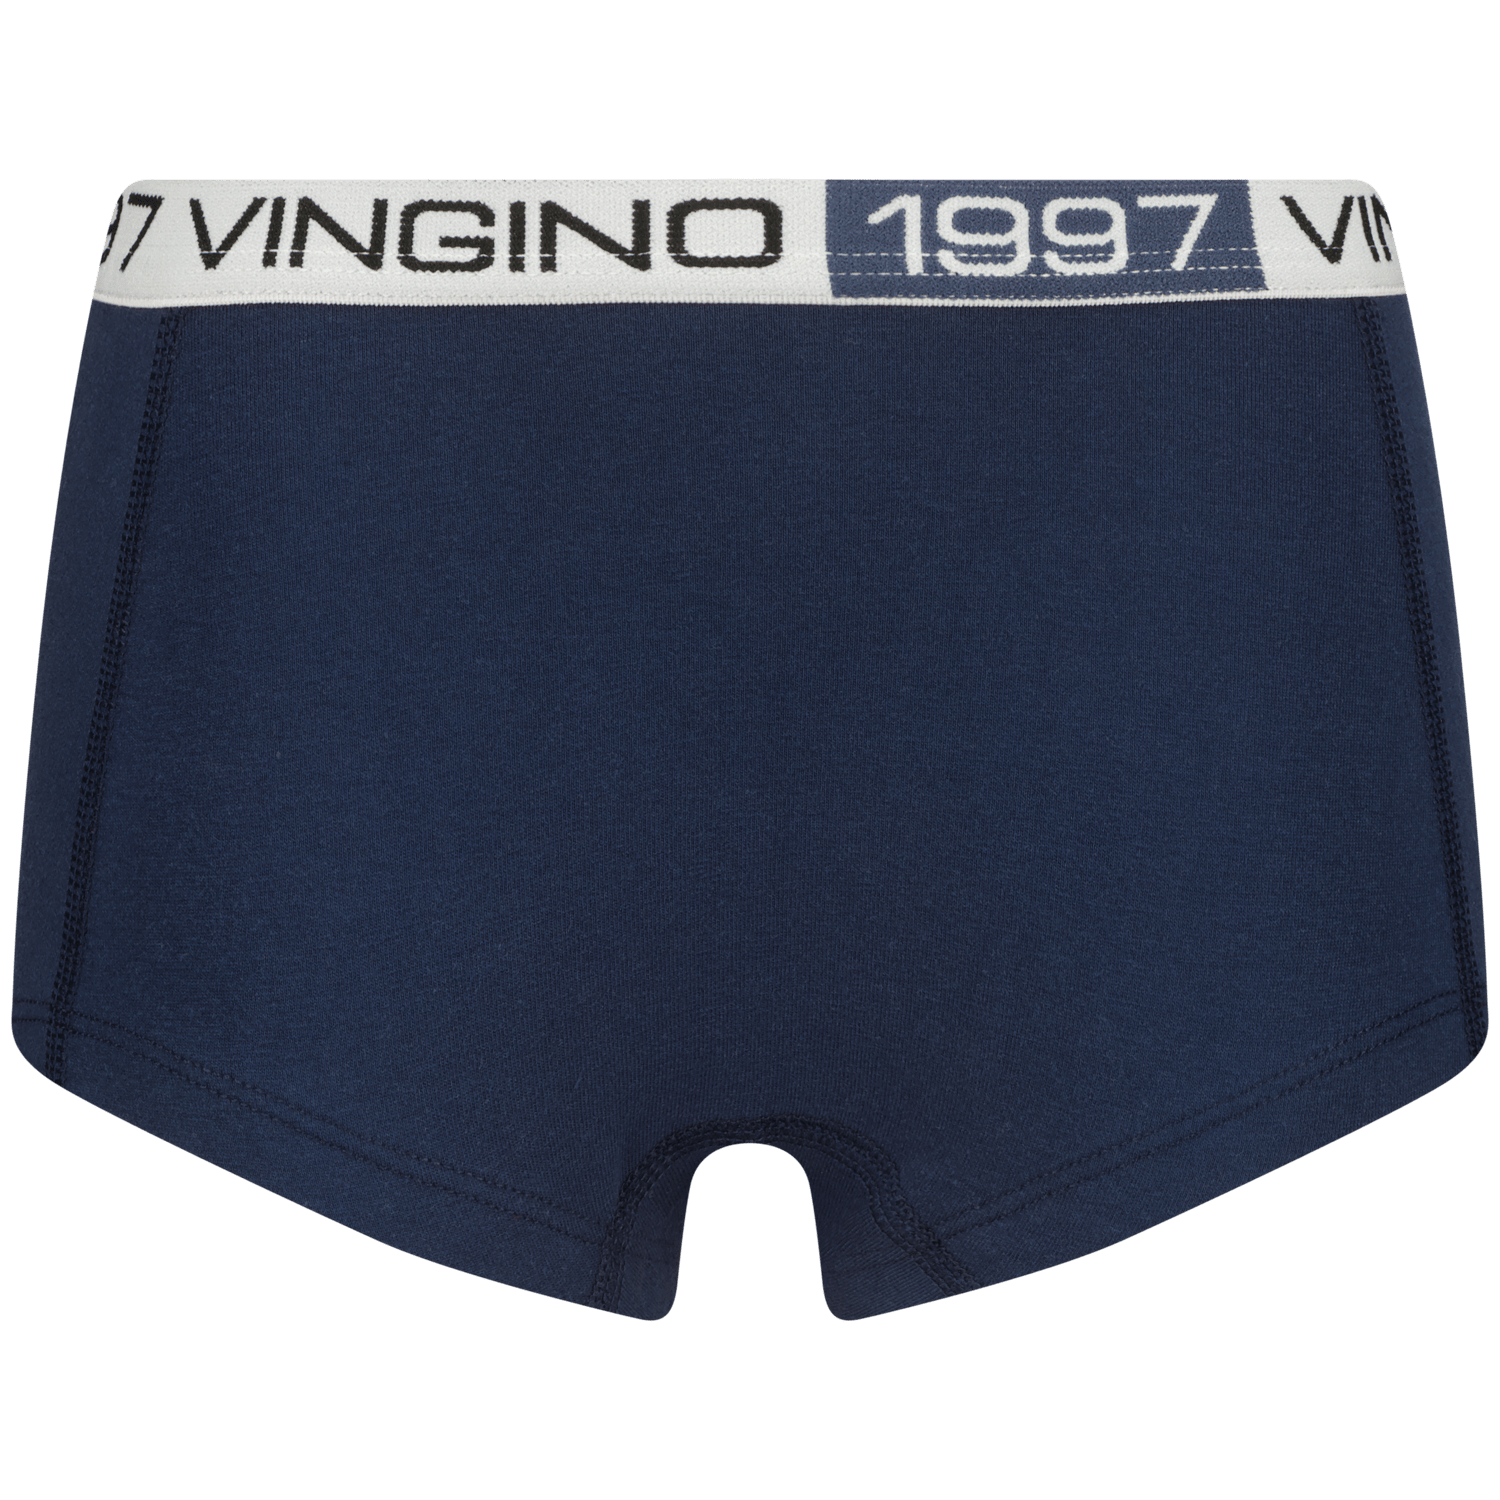 VINGINO Hipster G-so24-9 7 pack